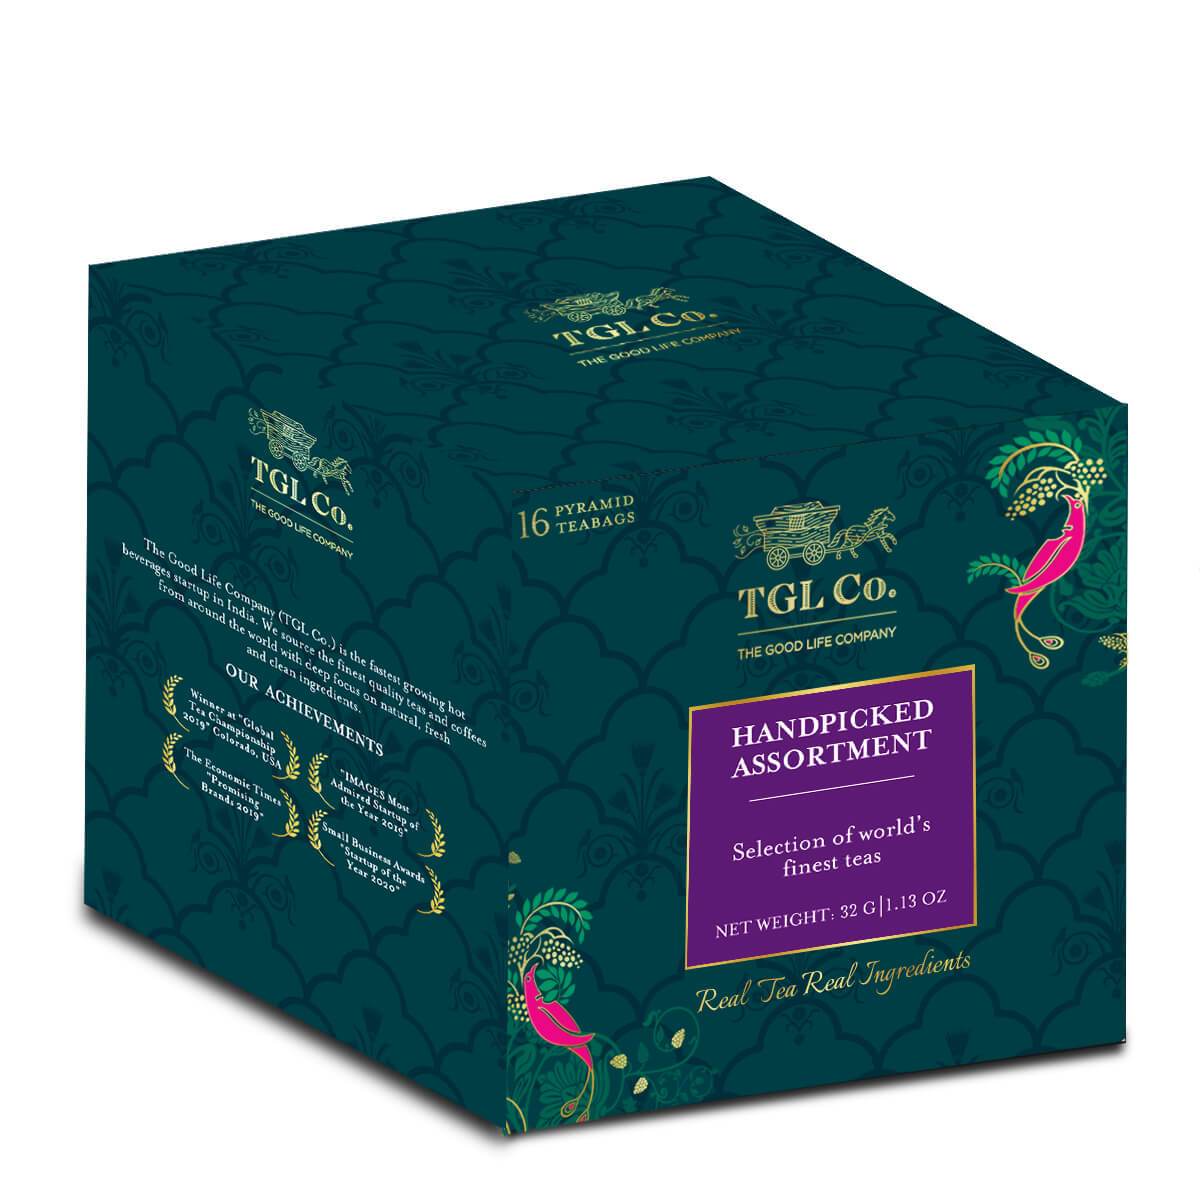 Handpicked Assortments Tea Bags Box - Assorted Tea Bags Box